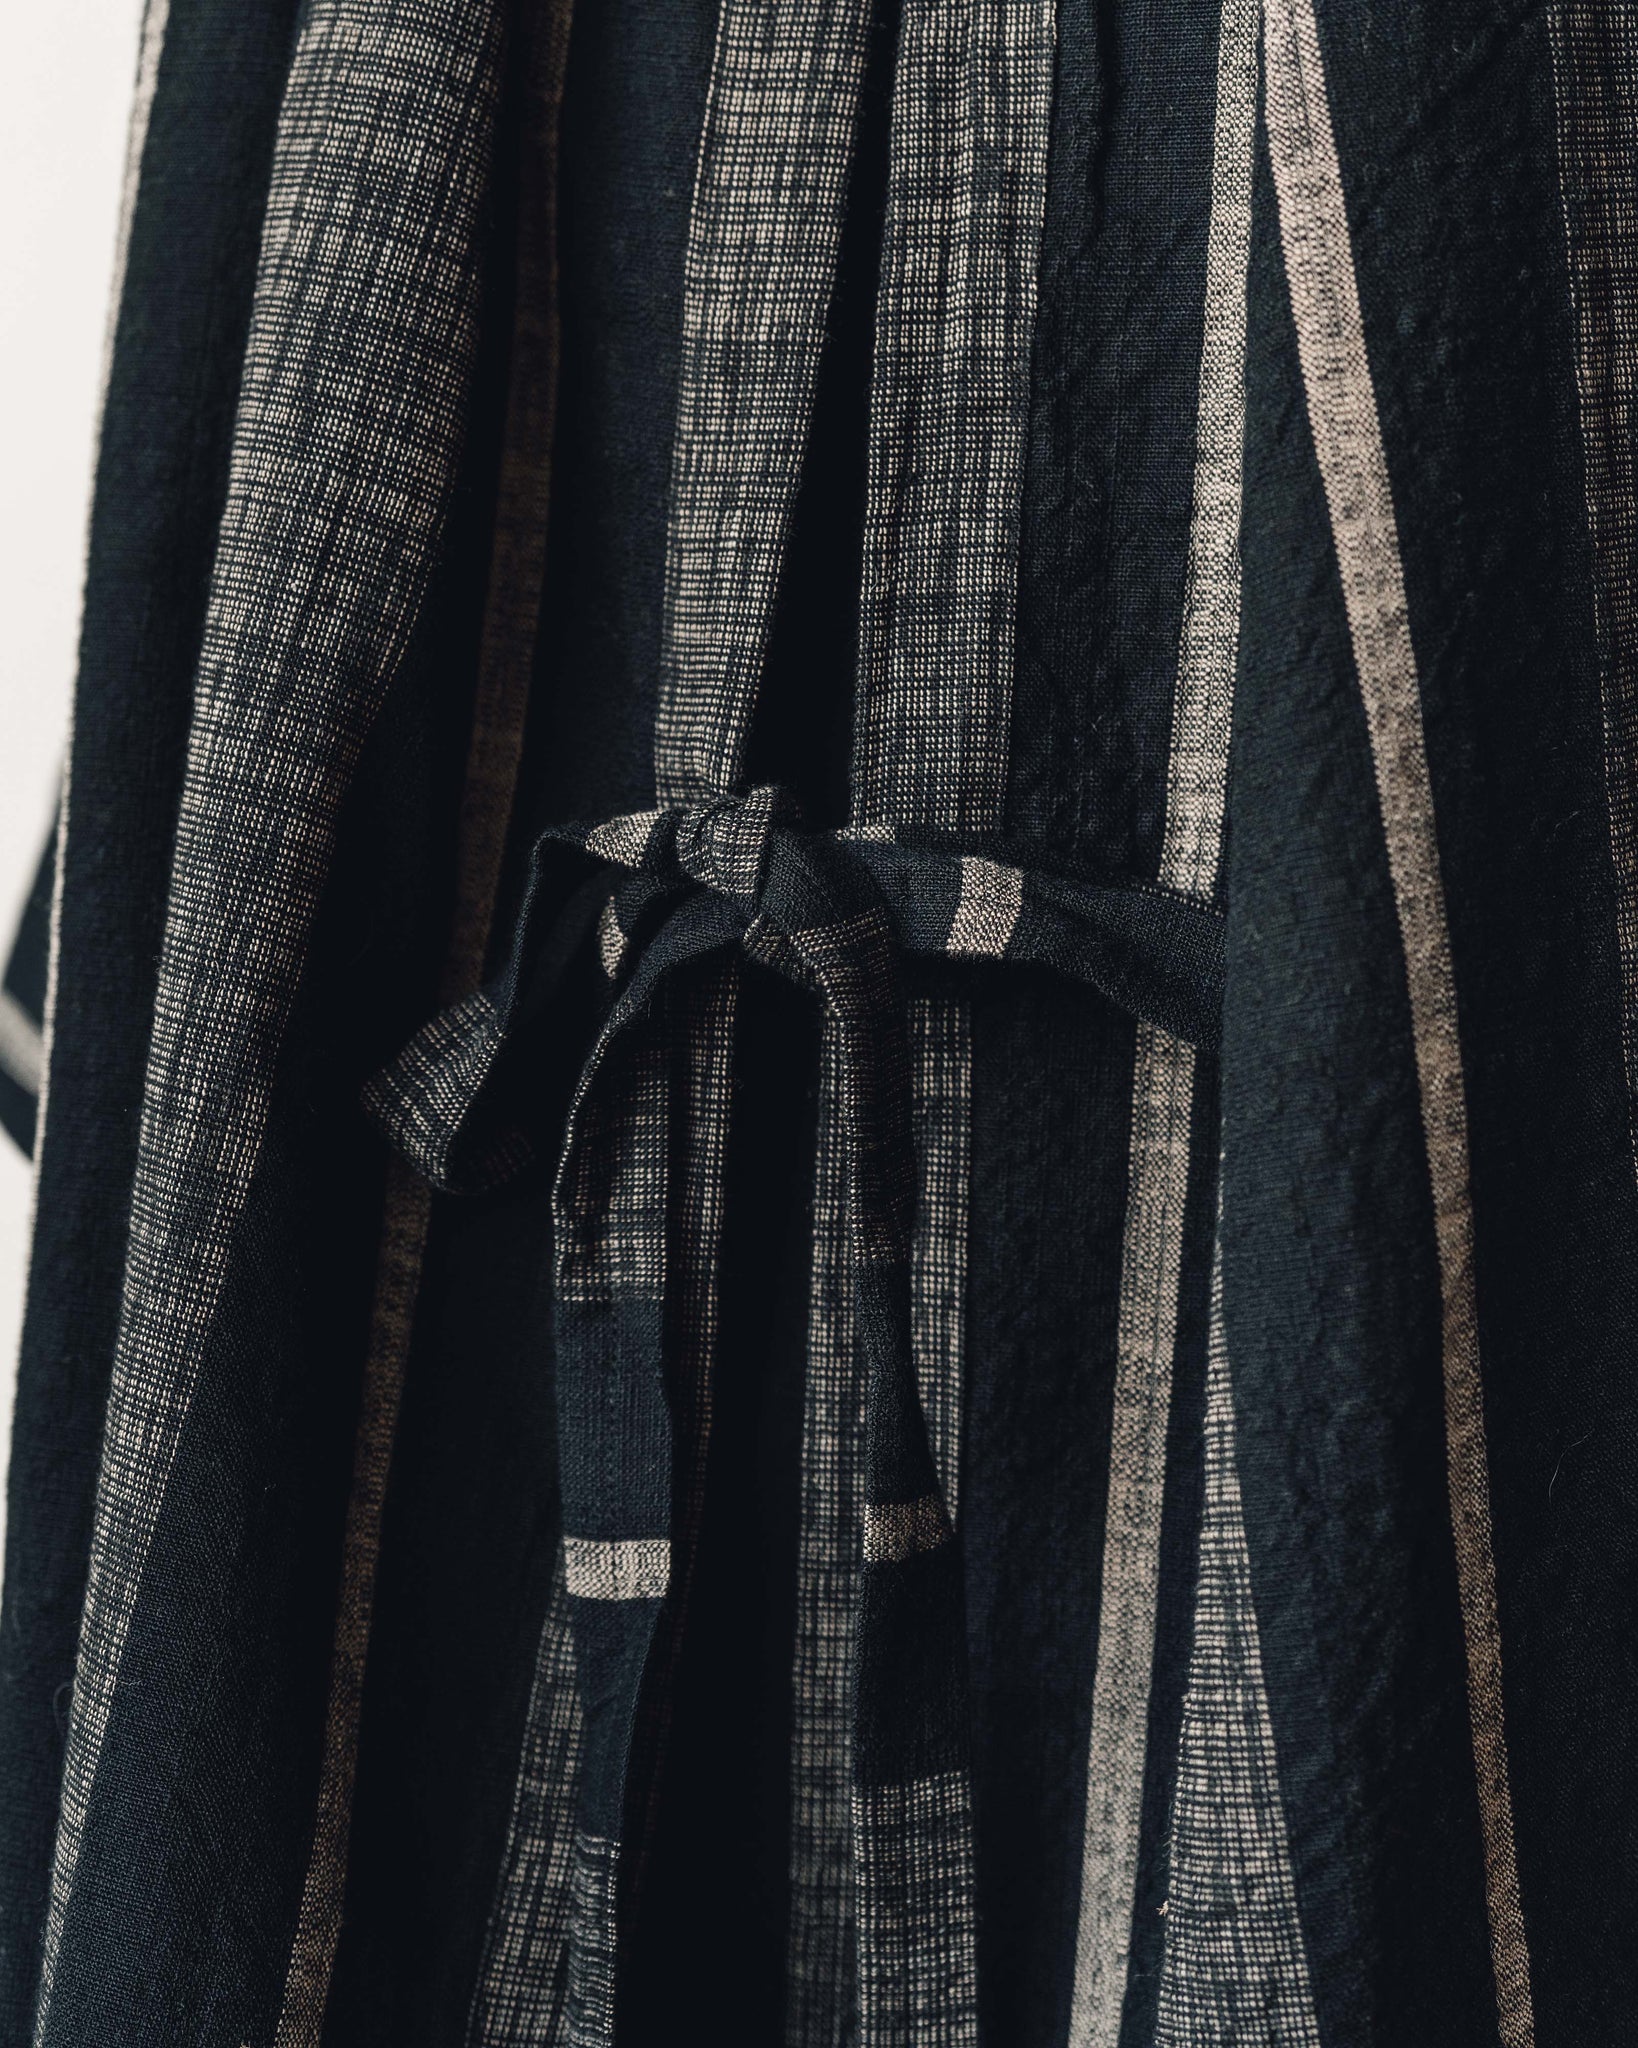 Jan-Jan Van Essche Scarf #23, Bold Striped Cloth